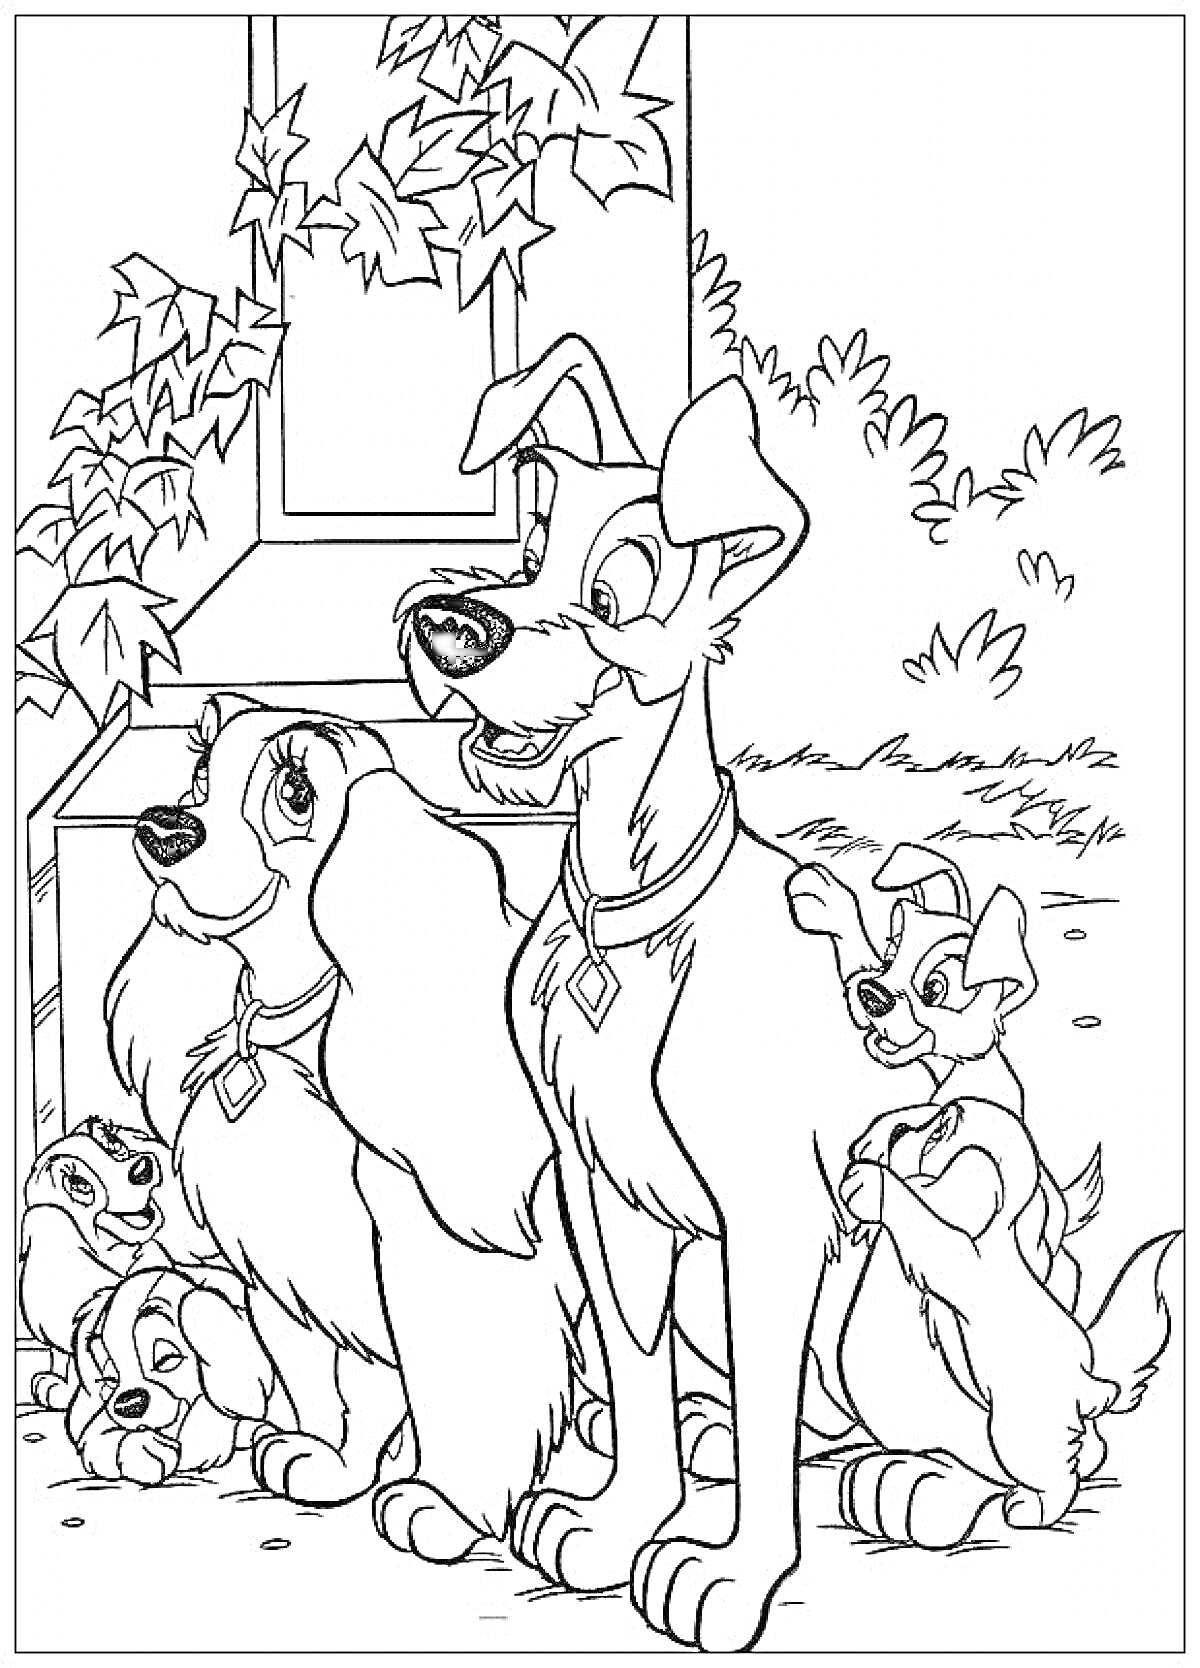 Раскраска Леди и Бродяга перед домом с щенками и лианами на стене